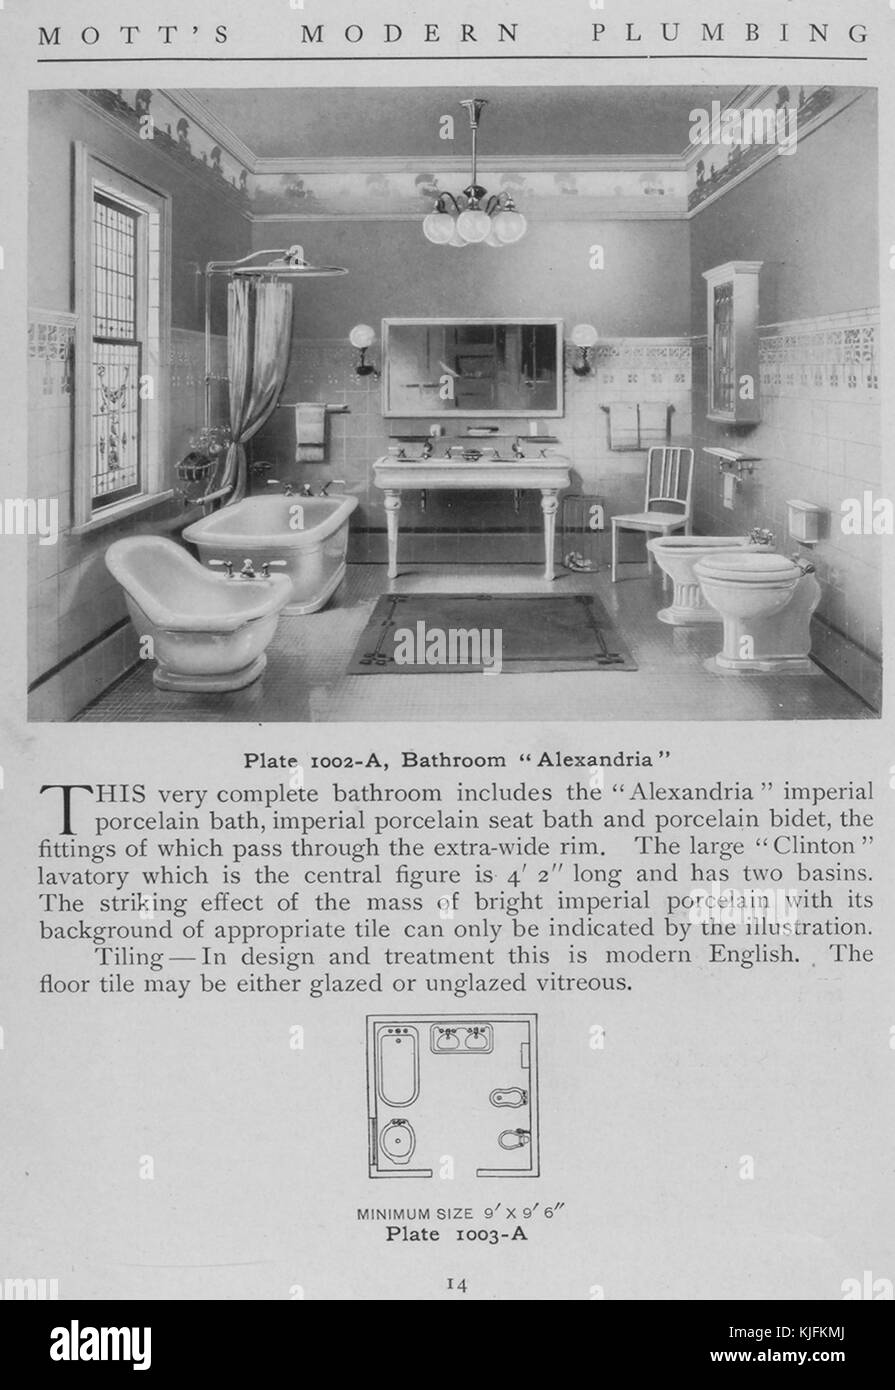 Salle de bains, Alexandrie, 1911 style. à partir de la bibliothèque publique de New York. Cette plaque est de motts plomberie moderne, un catalogue illustrant différents styles d'accessoires de salle de bain. Banque D'Images